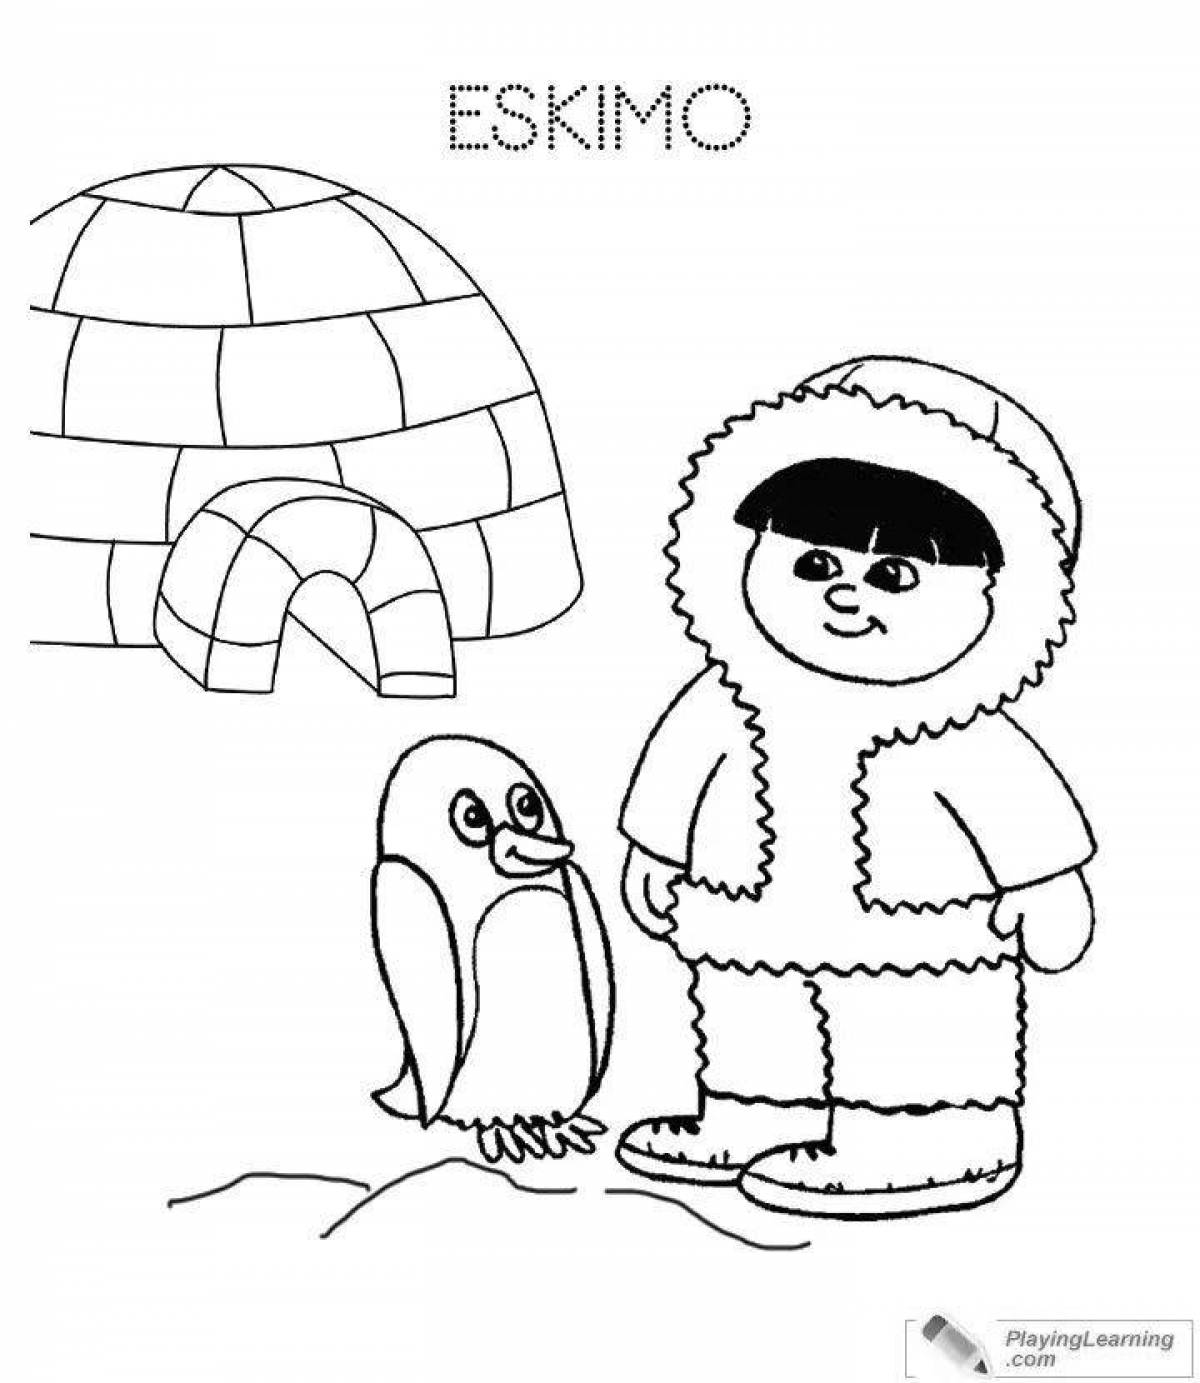 Bright eskimo coloring book